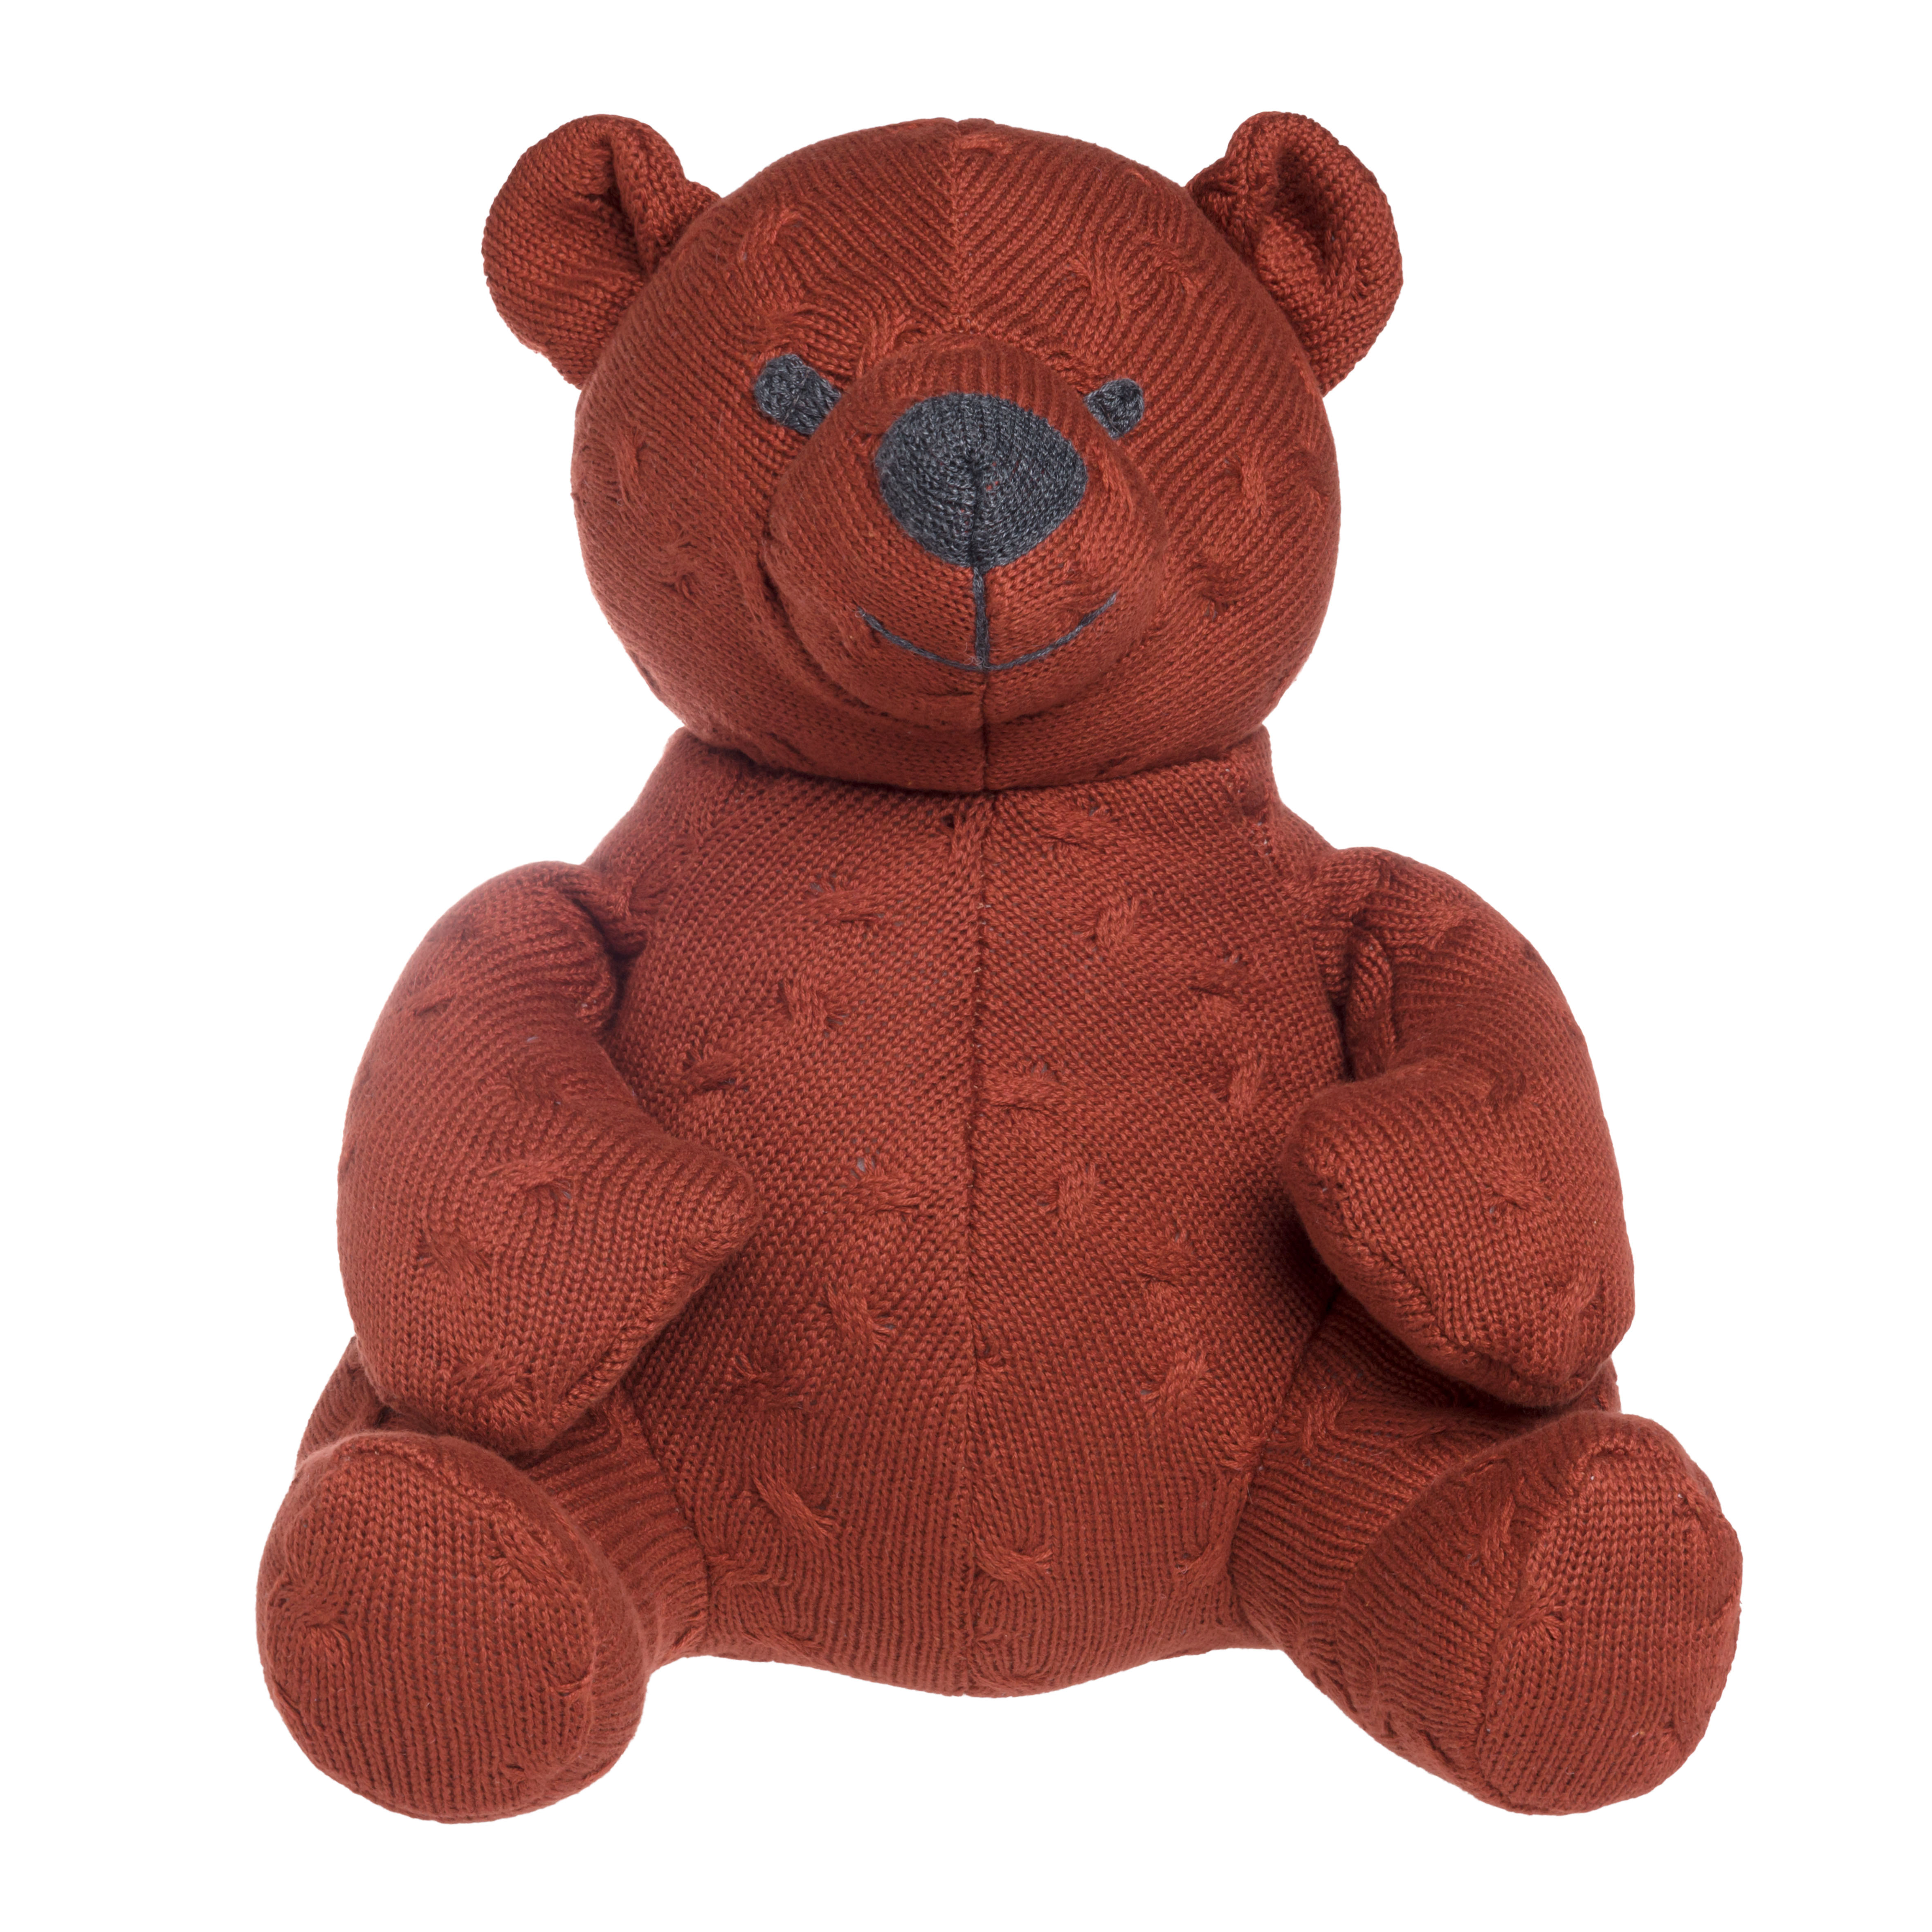 Stuffed bear Cable brique - 35 cm